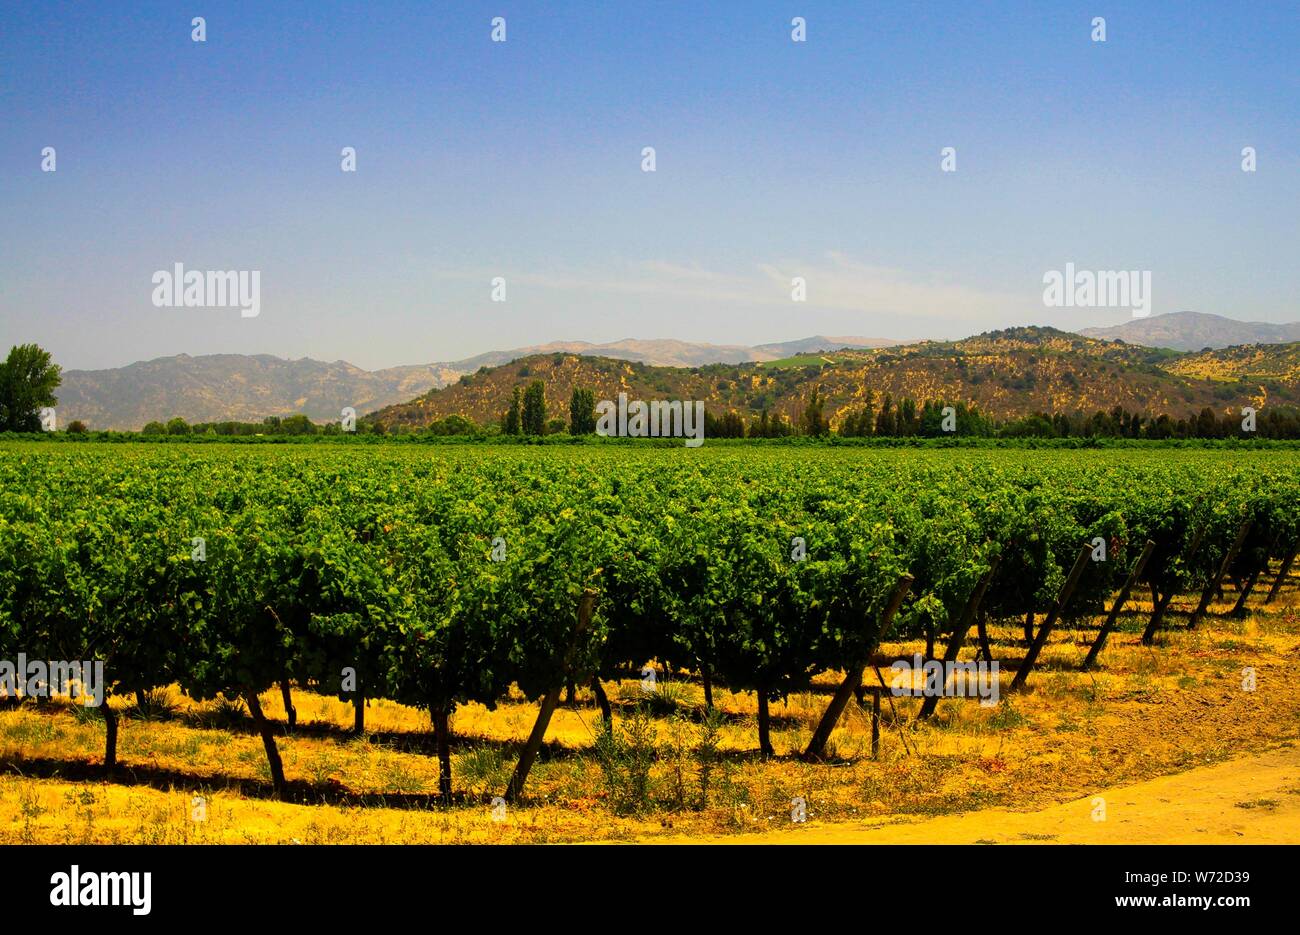 Valle central chile fotografías e imágenes de alta resolución - Alamy